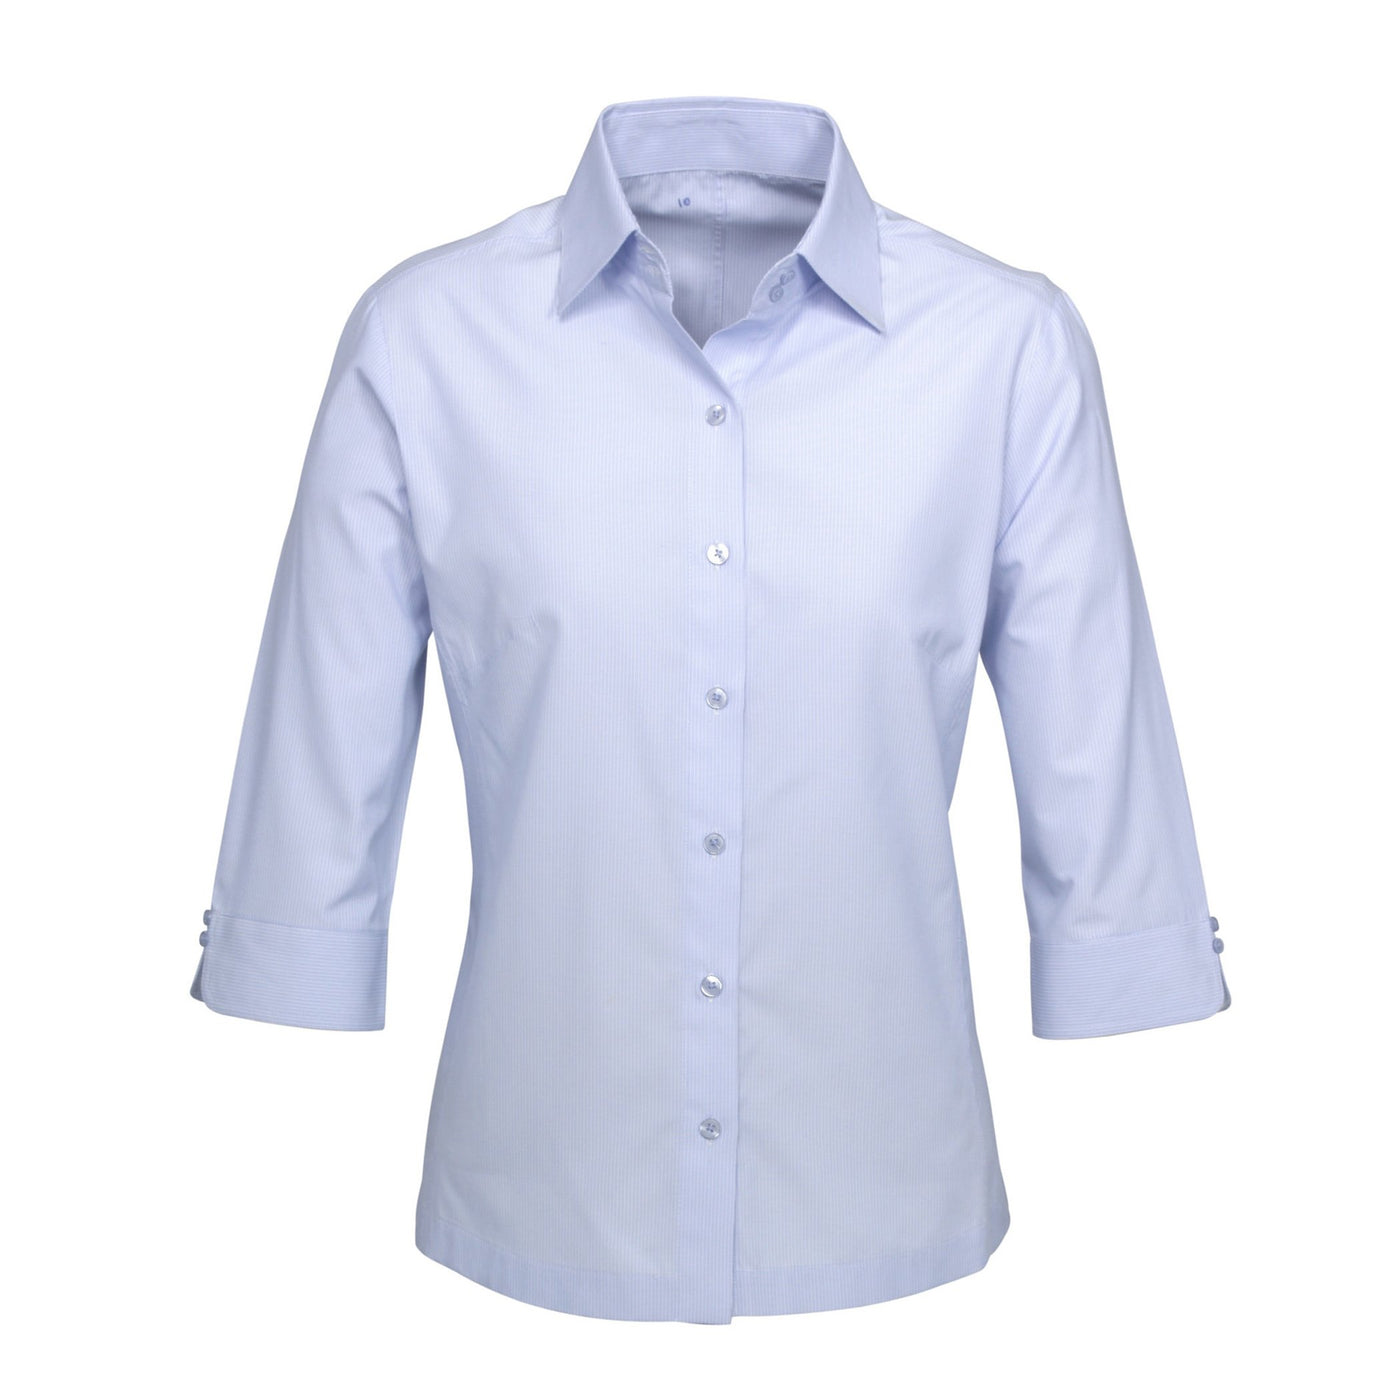 Biz Collection Ambassador Shirt 3/4 Sleeve - Womens